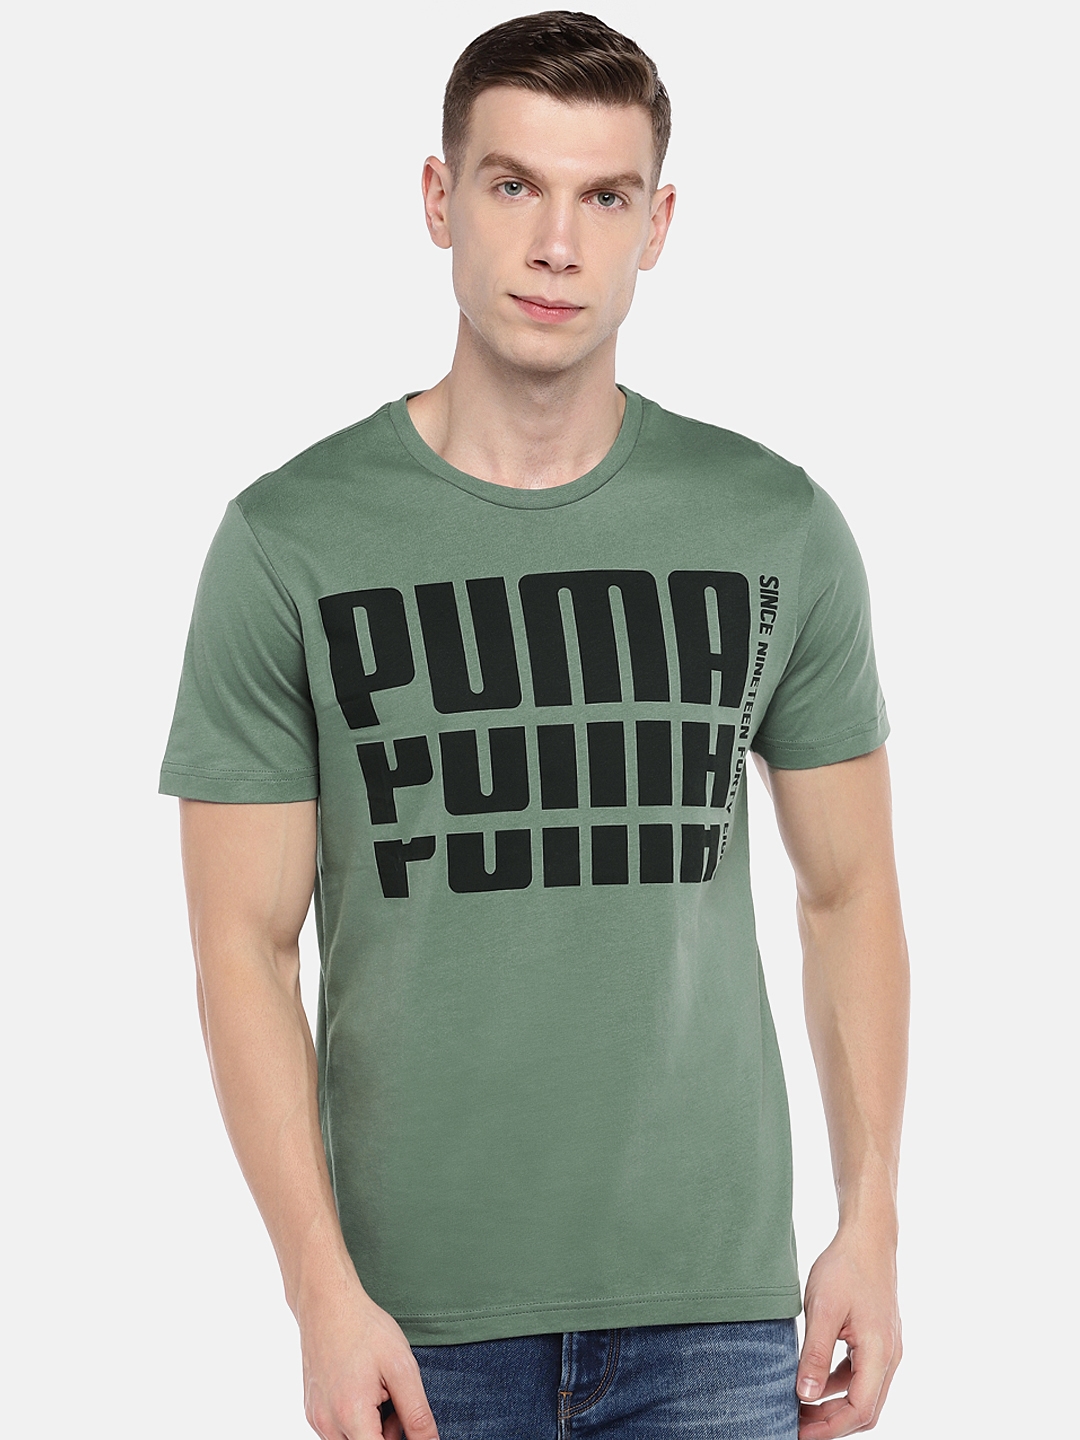 olive green puma shirt